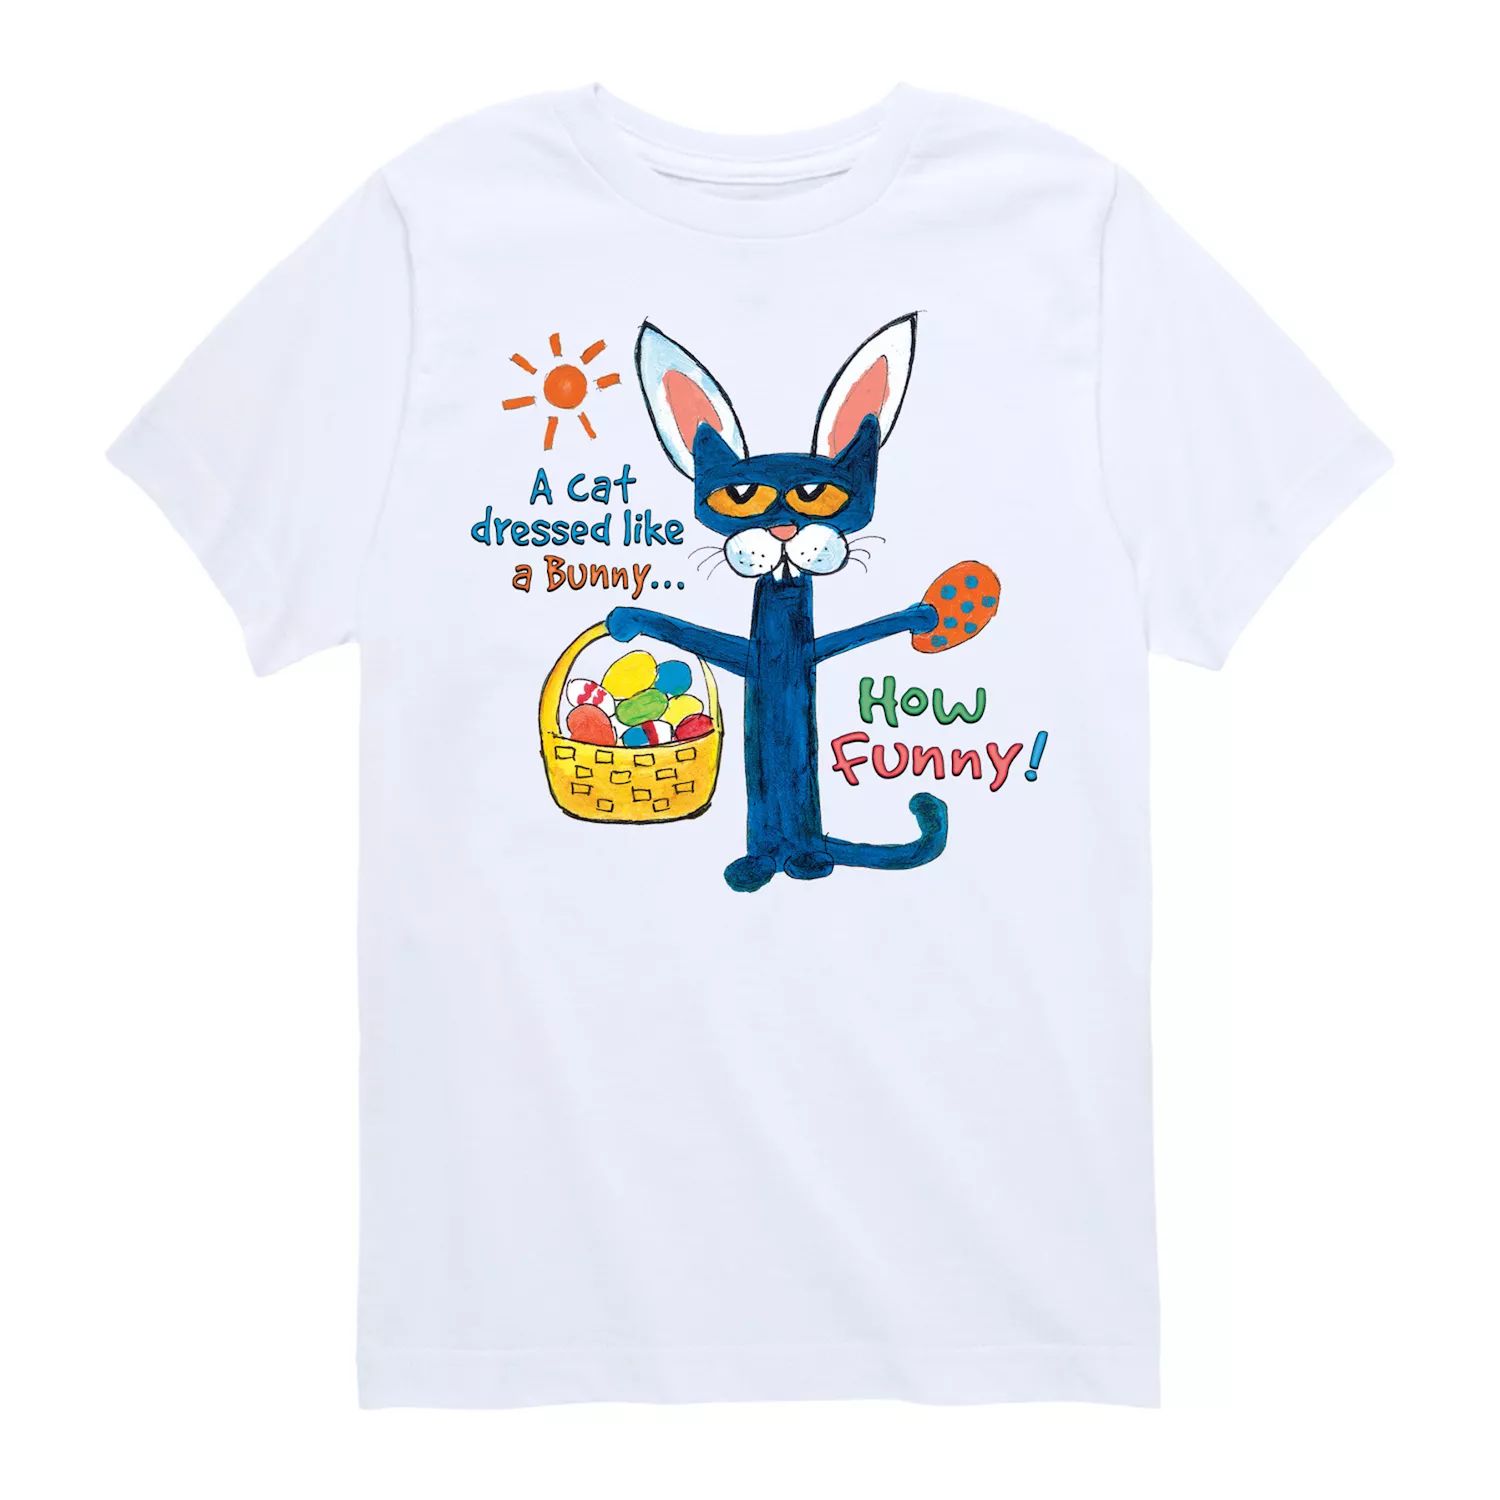 Футболка с рисунком Pete The Cat Bunny для мальчиков 8–20 лет Licensed Character футболка groovy с рисунком pete the cat для мальчиков 8–20 лет licensed character